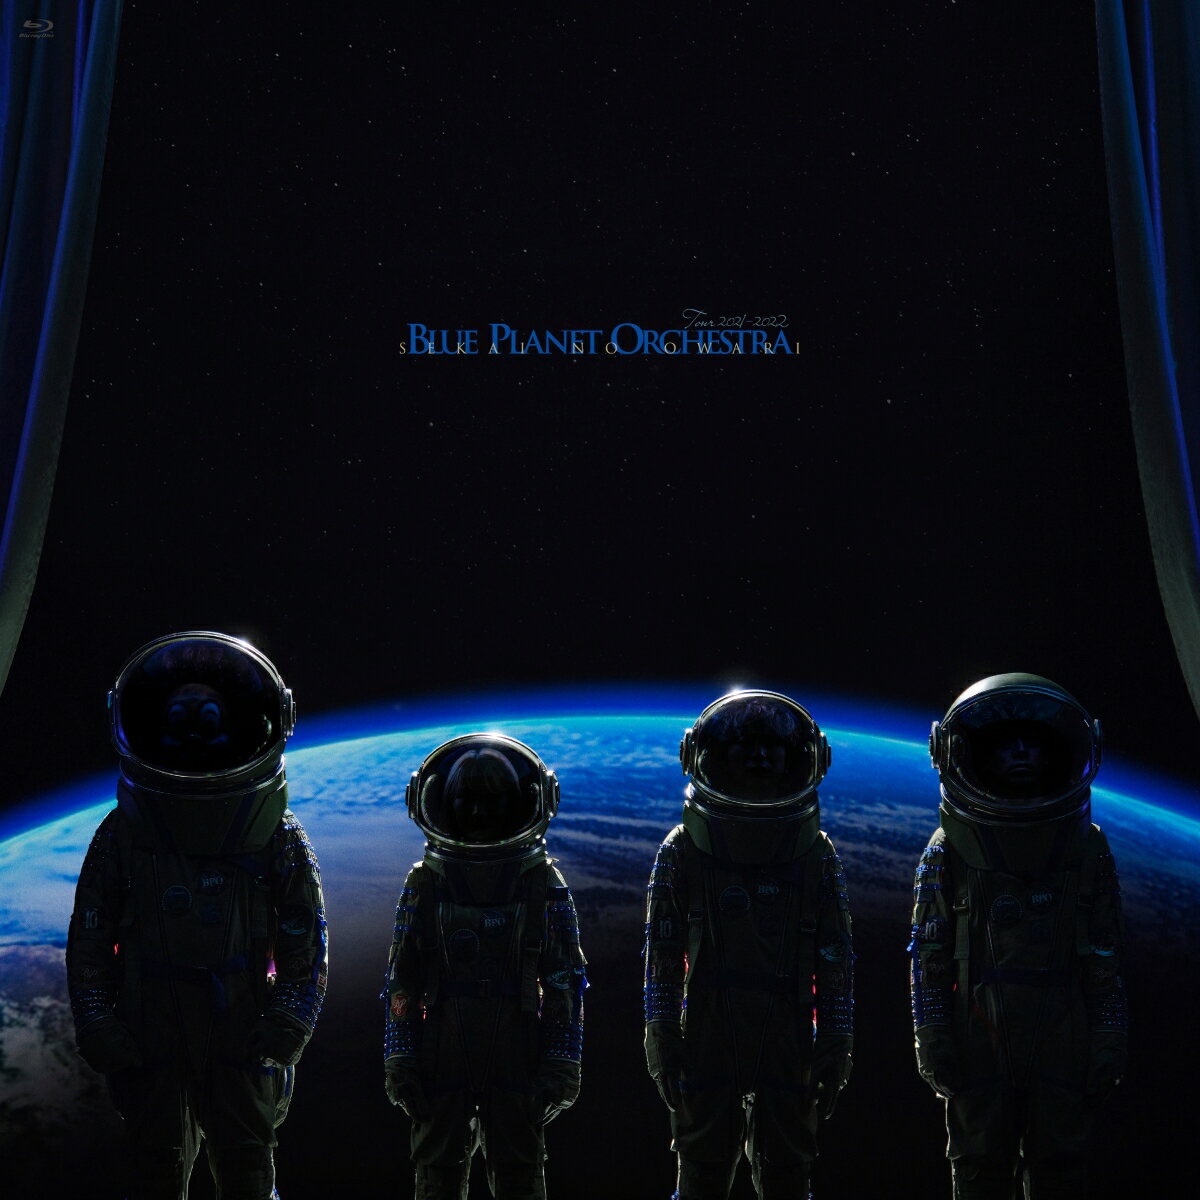 BLUE PLANET ORCHESTRA(初回生産限定デラックス盤 BLU-RAY+2CD+α)【Blu-ray】